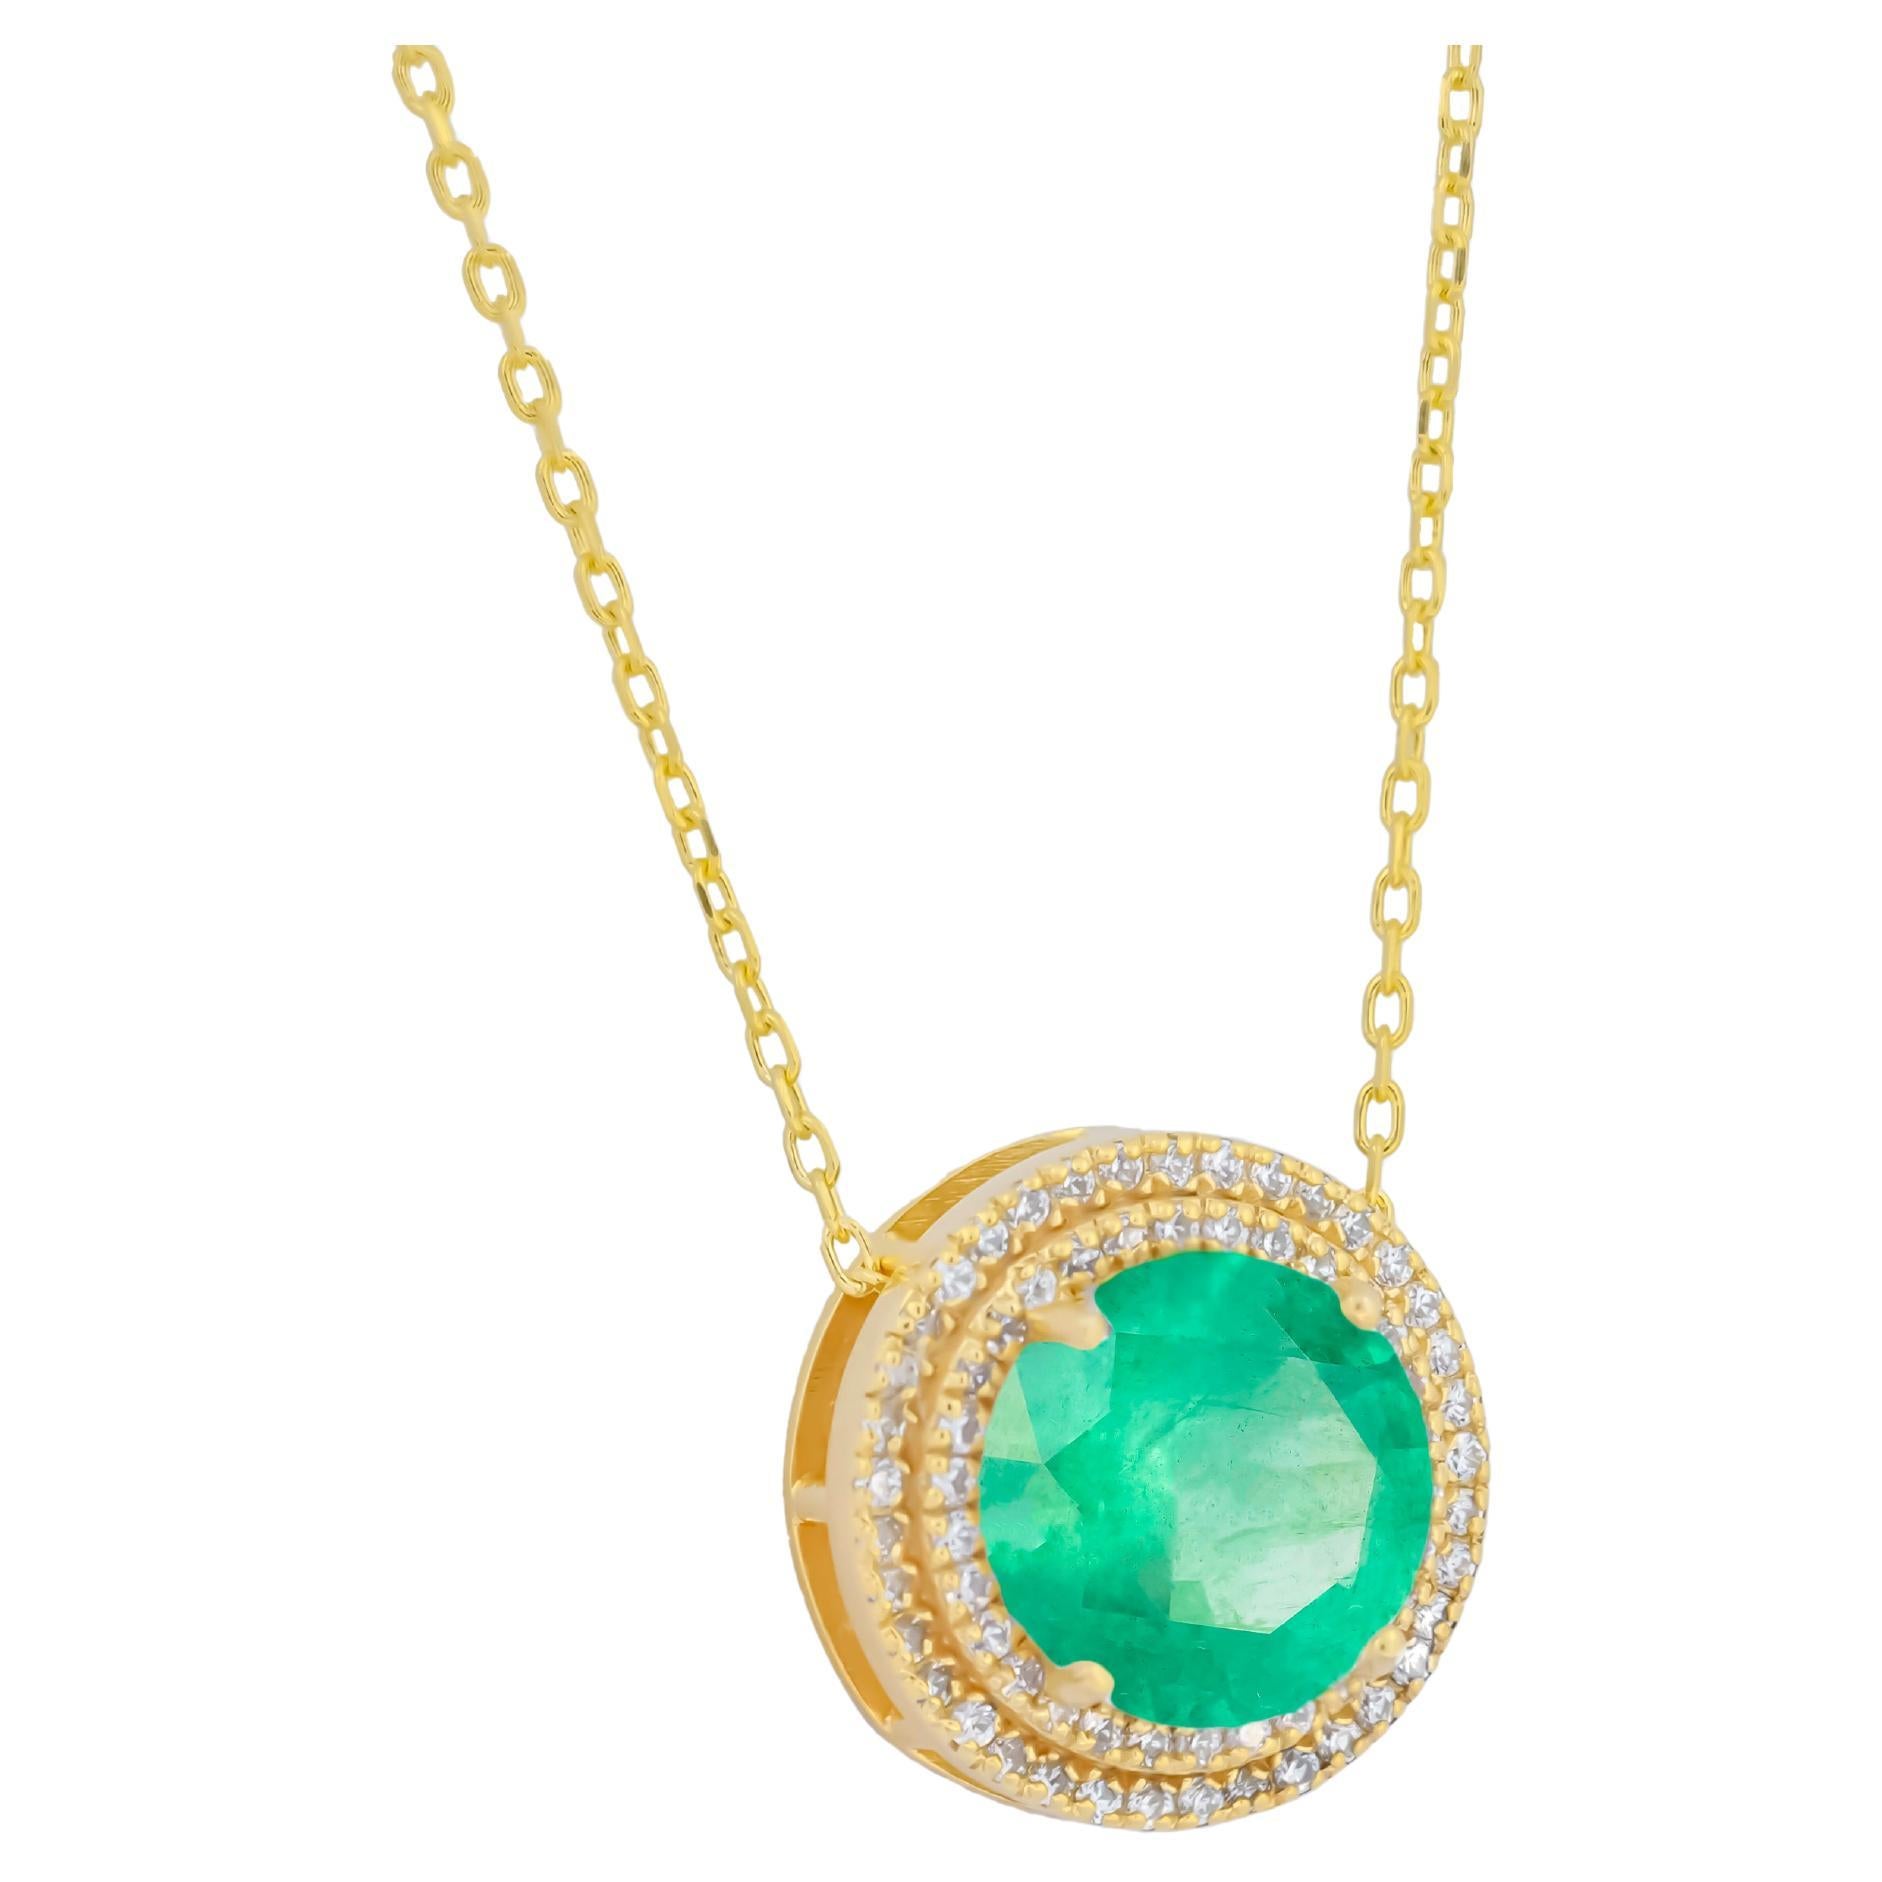 Halskette mit Smaragd-, Diamanten- und 14 Karat Gelbgold-Anhänger in runder Form mit Smaragd